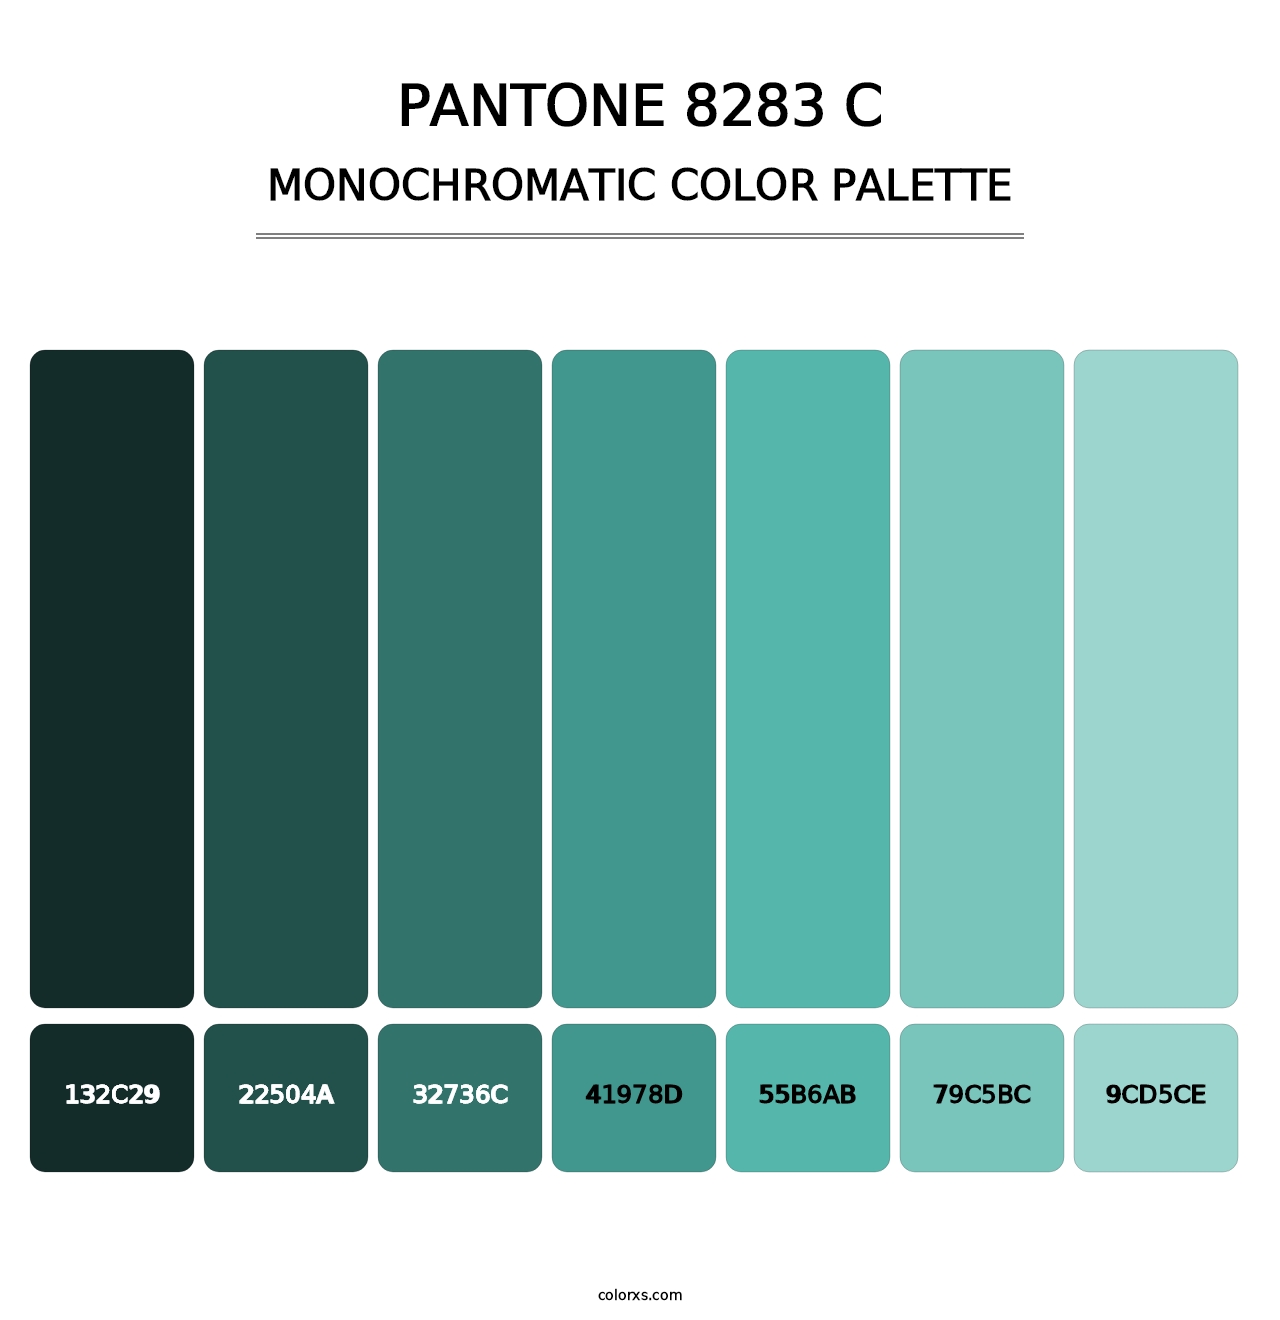 PANTONE 8283 C - Monochromatic Color Palette